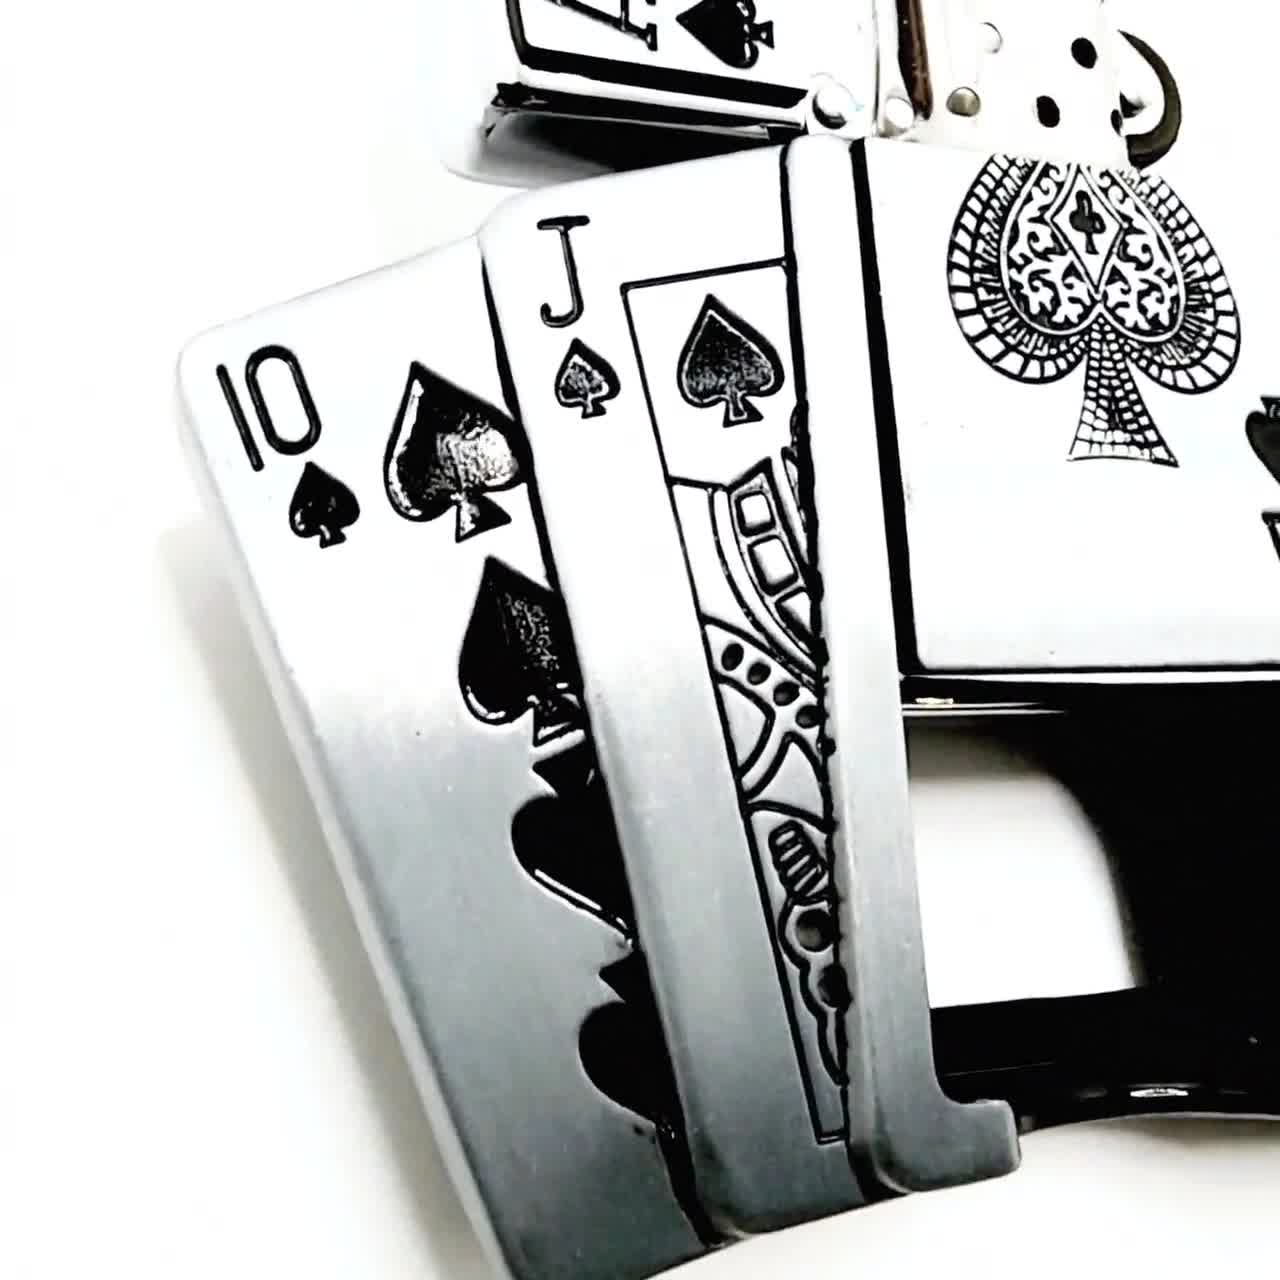 Poker Royal Flush Belt Buckle Lighter Holder WITH Ace of Spades LIGHTER